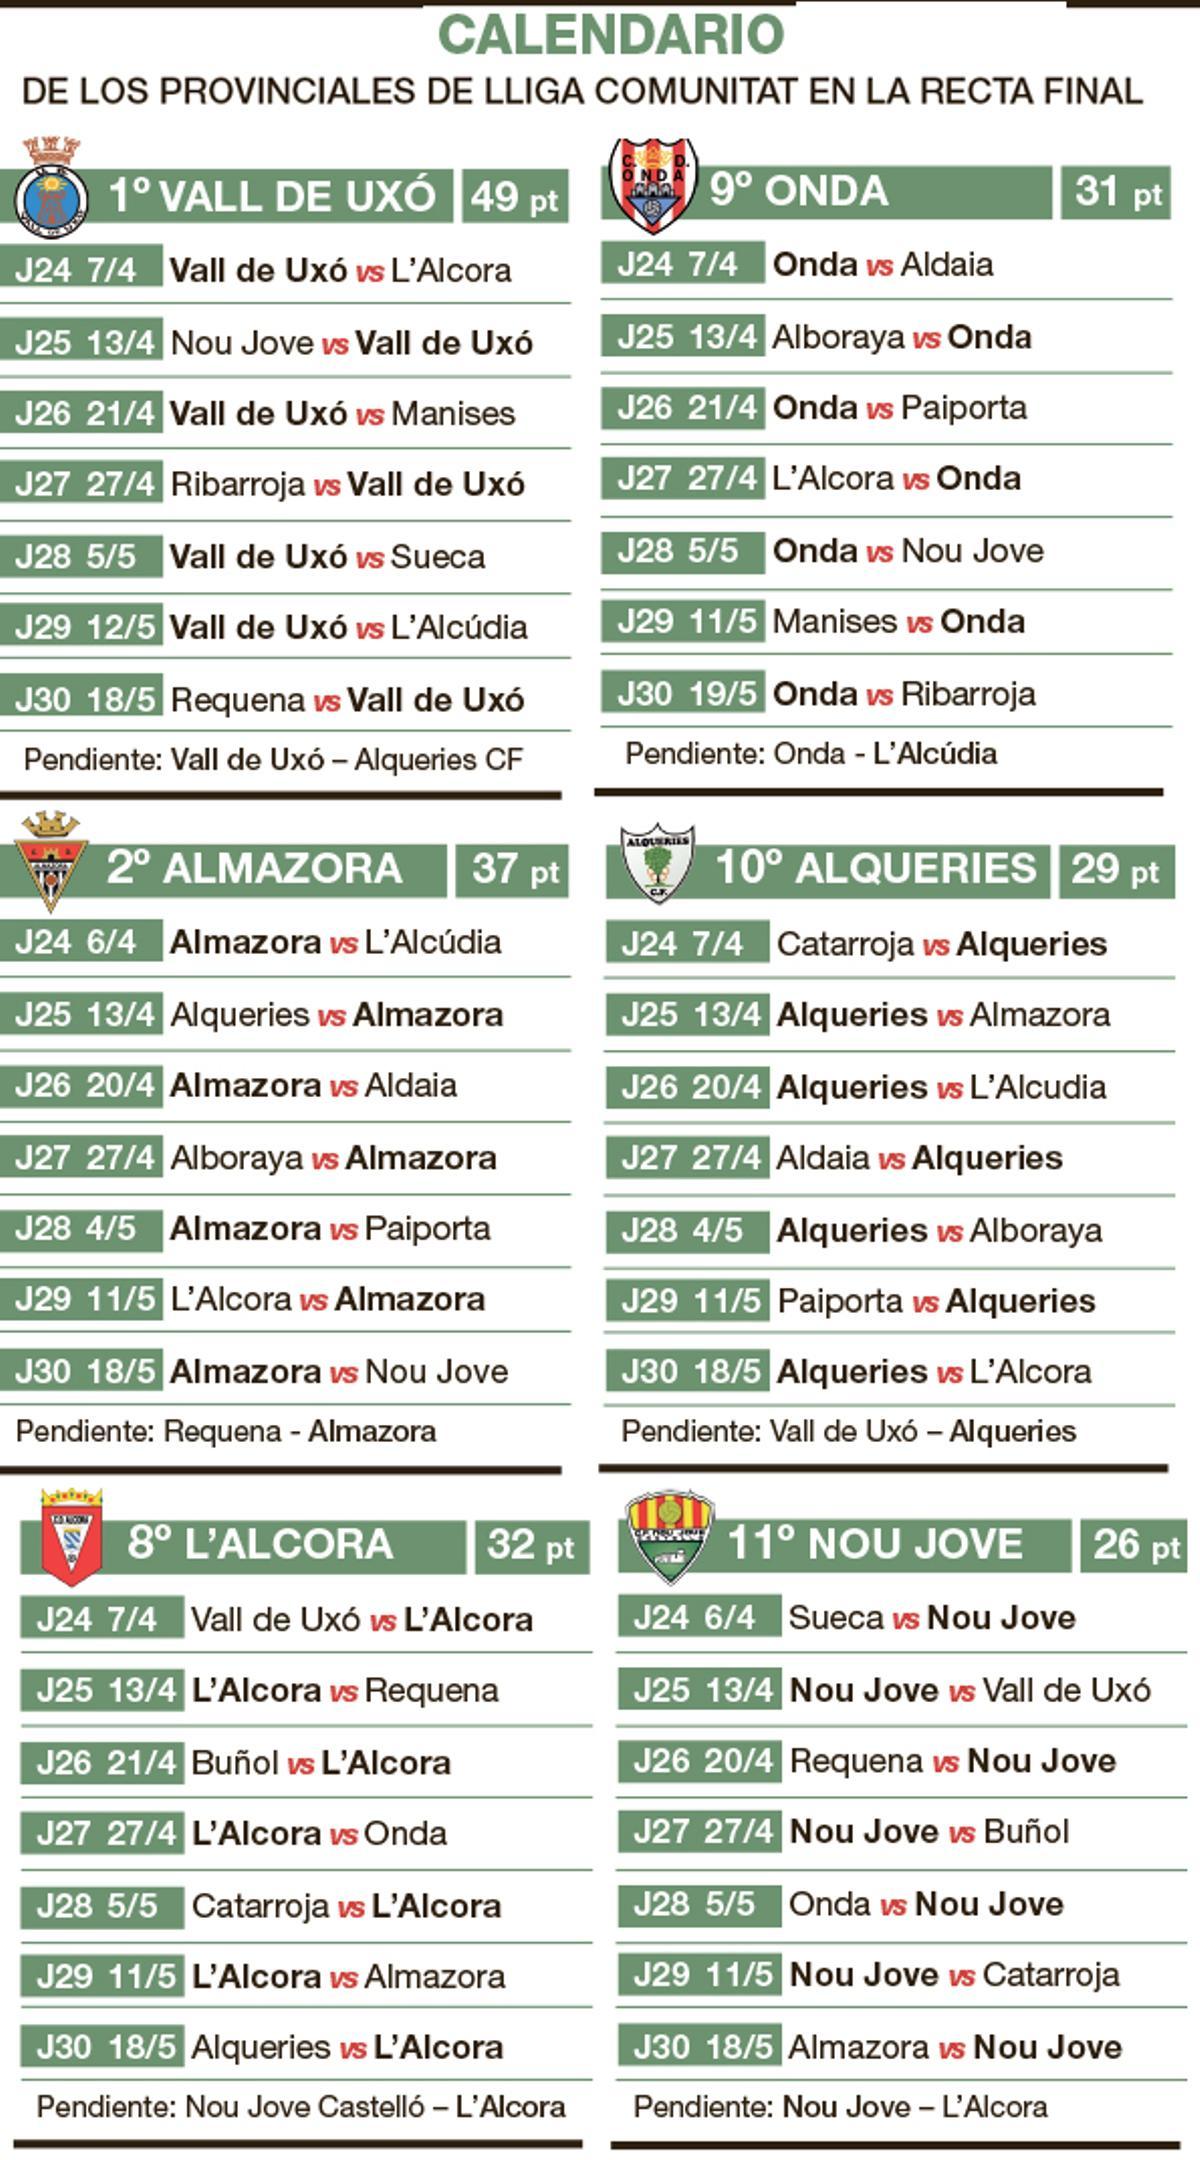 Calendario de los equipos de Castellón en la recta final de la temporada.